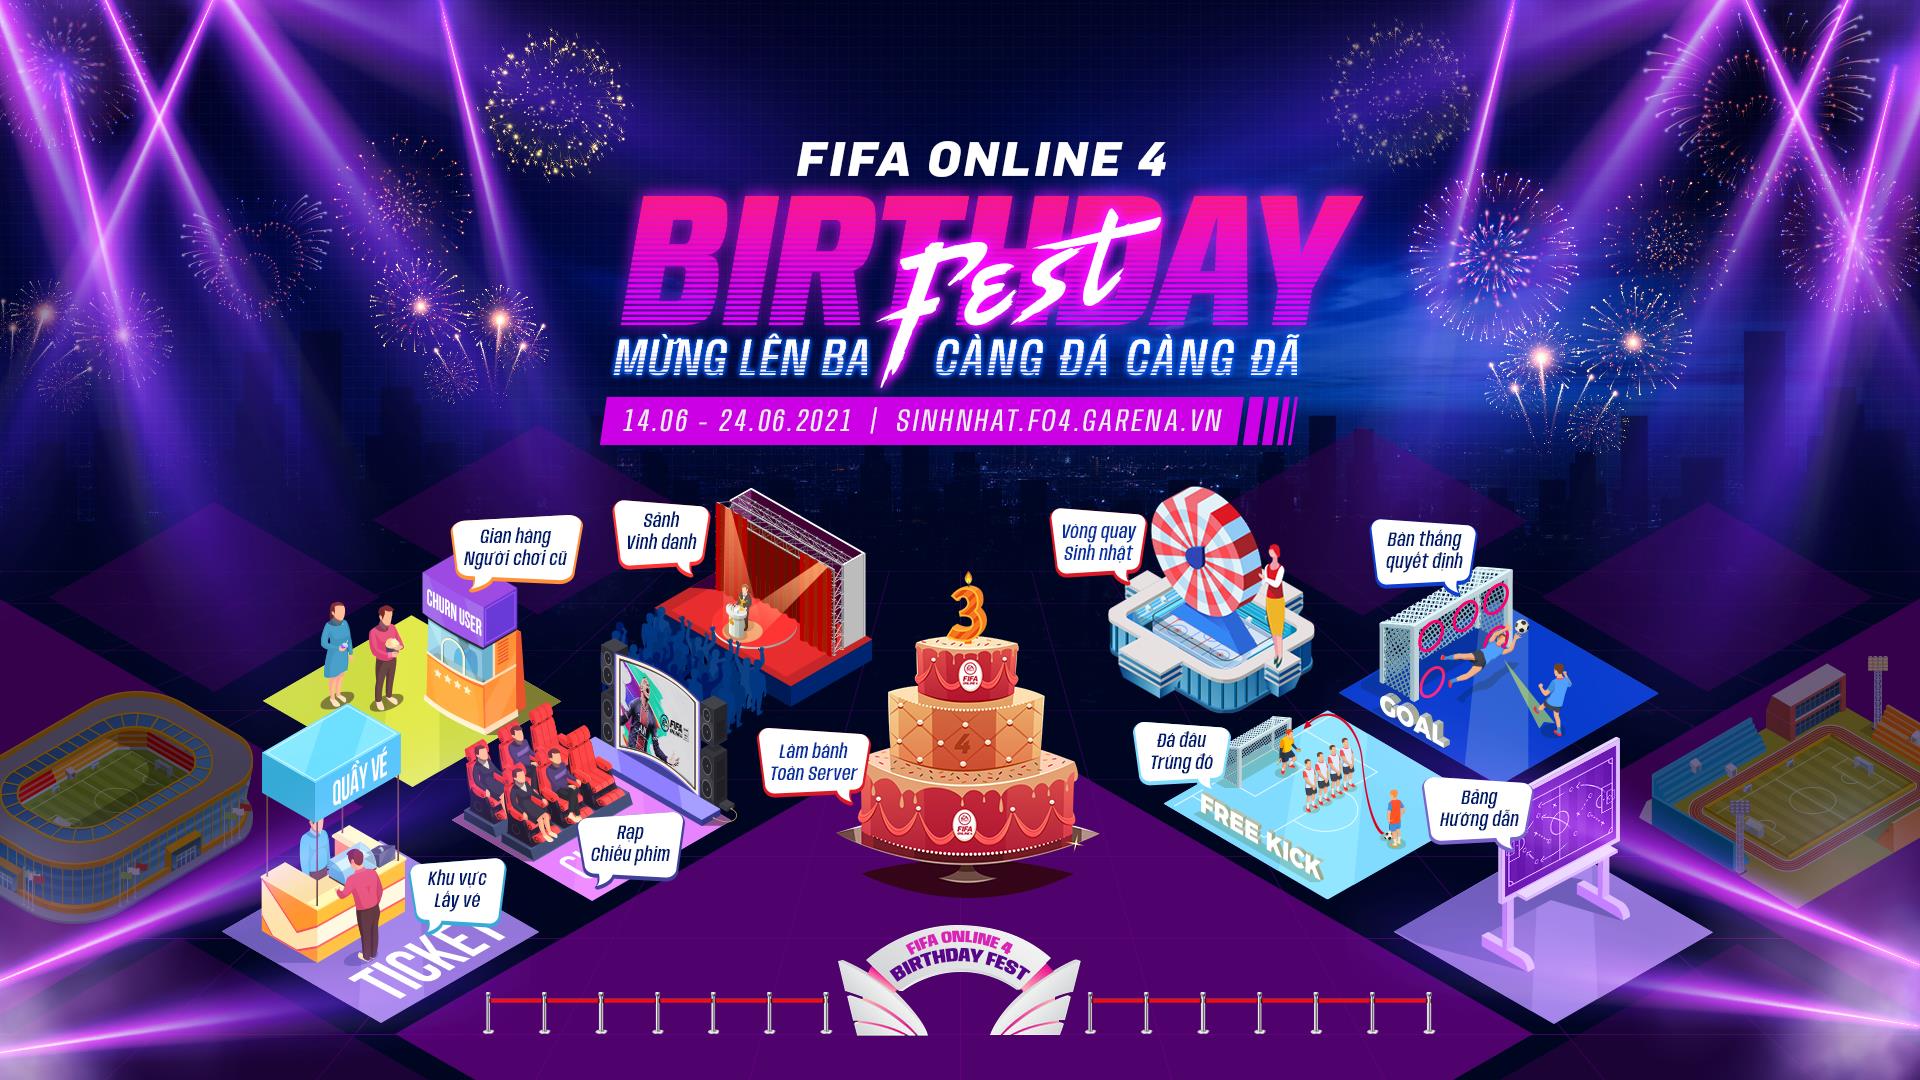 FIFA Online 4 kỷ niệm sinh nhật 3 tuổi bằng siêu lễ với hàng ngàn phần quà  cực khủng